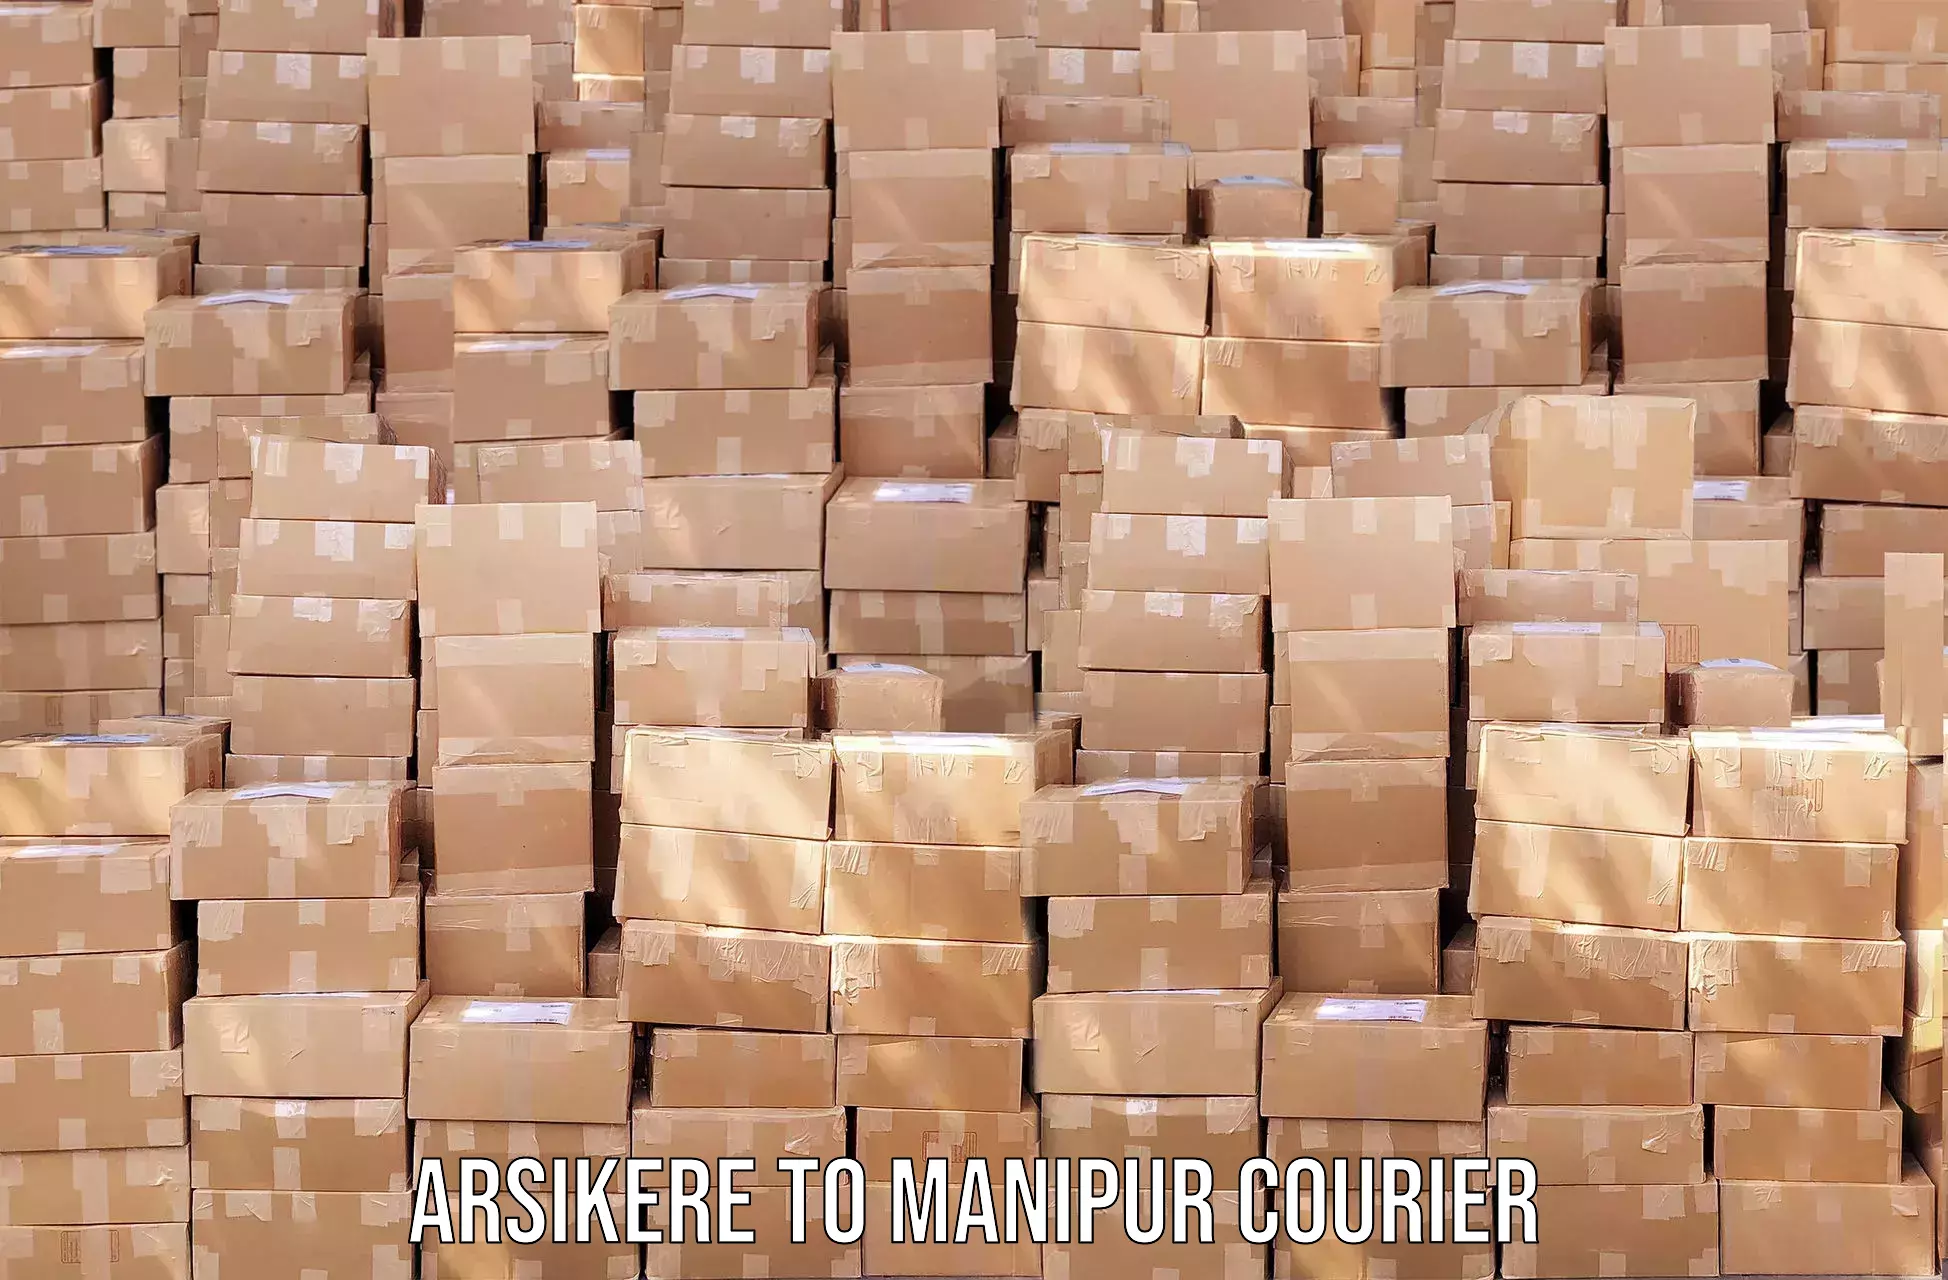 Urban courier service Arsikere to Churachandpur